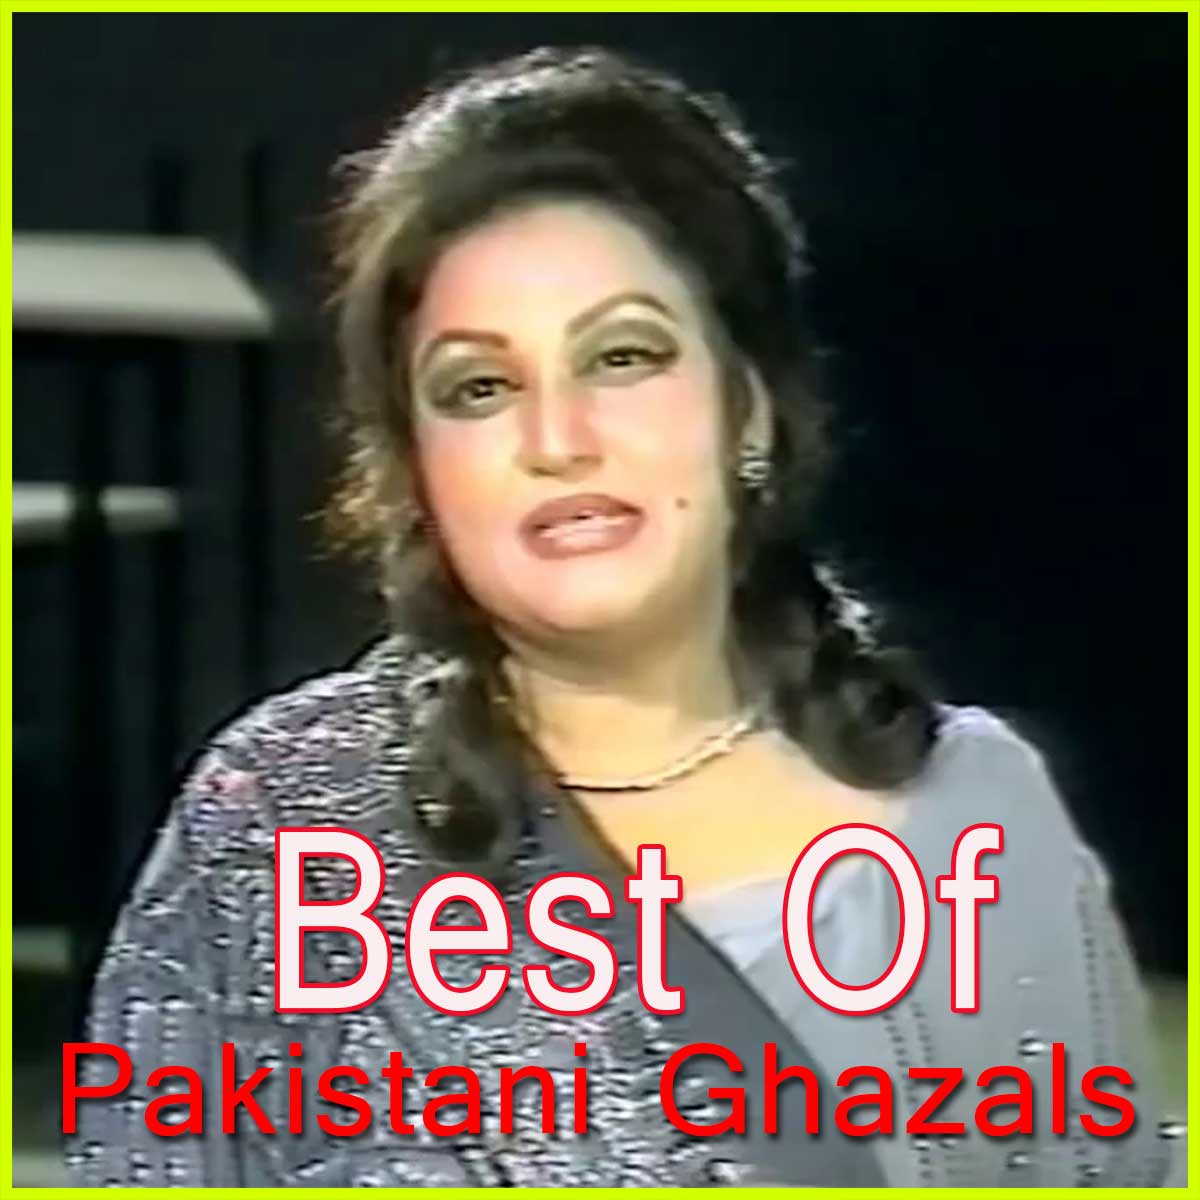 pakistani ghazals